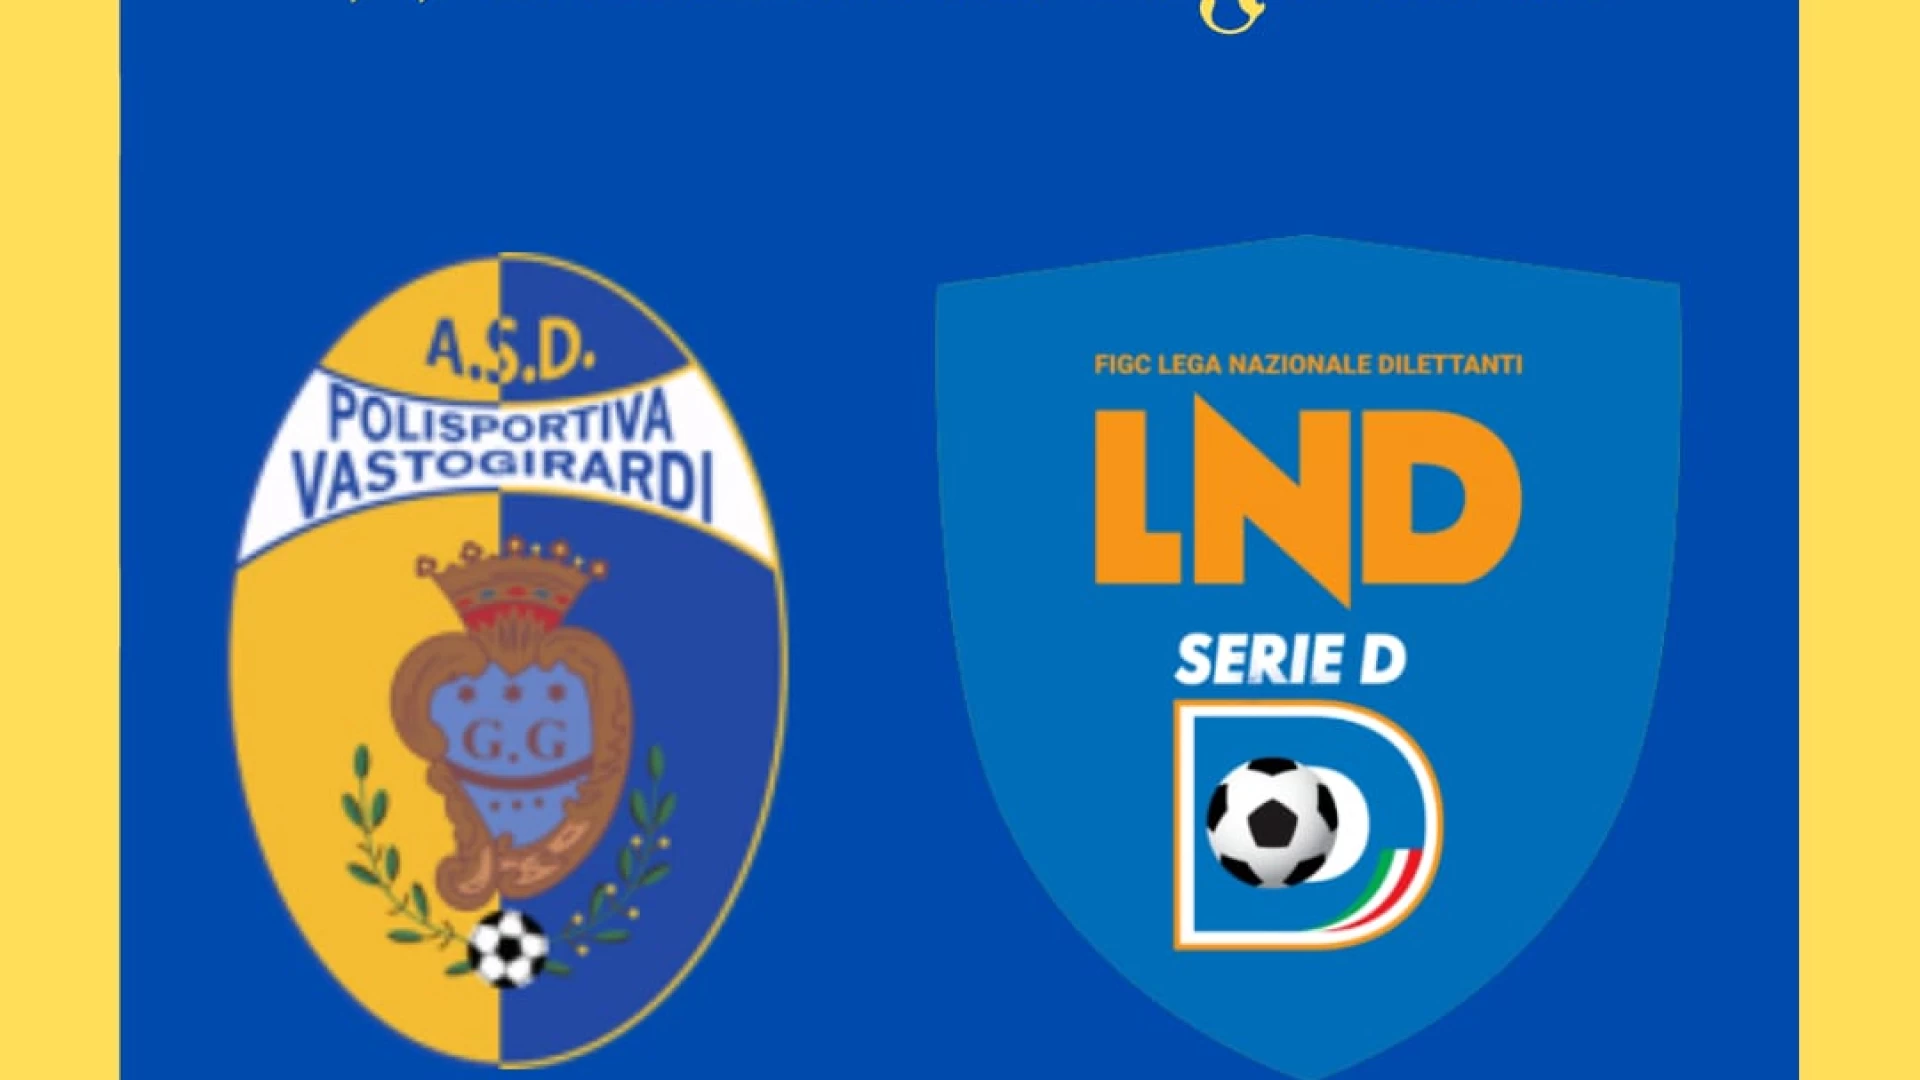 Vastogirardi: Ufficialmente iscritti al campionato di Serie D per la quinta stagione consecutiva.